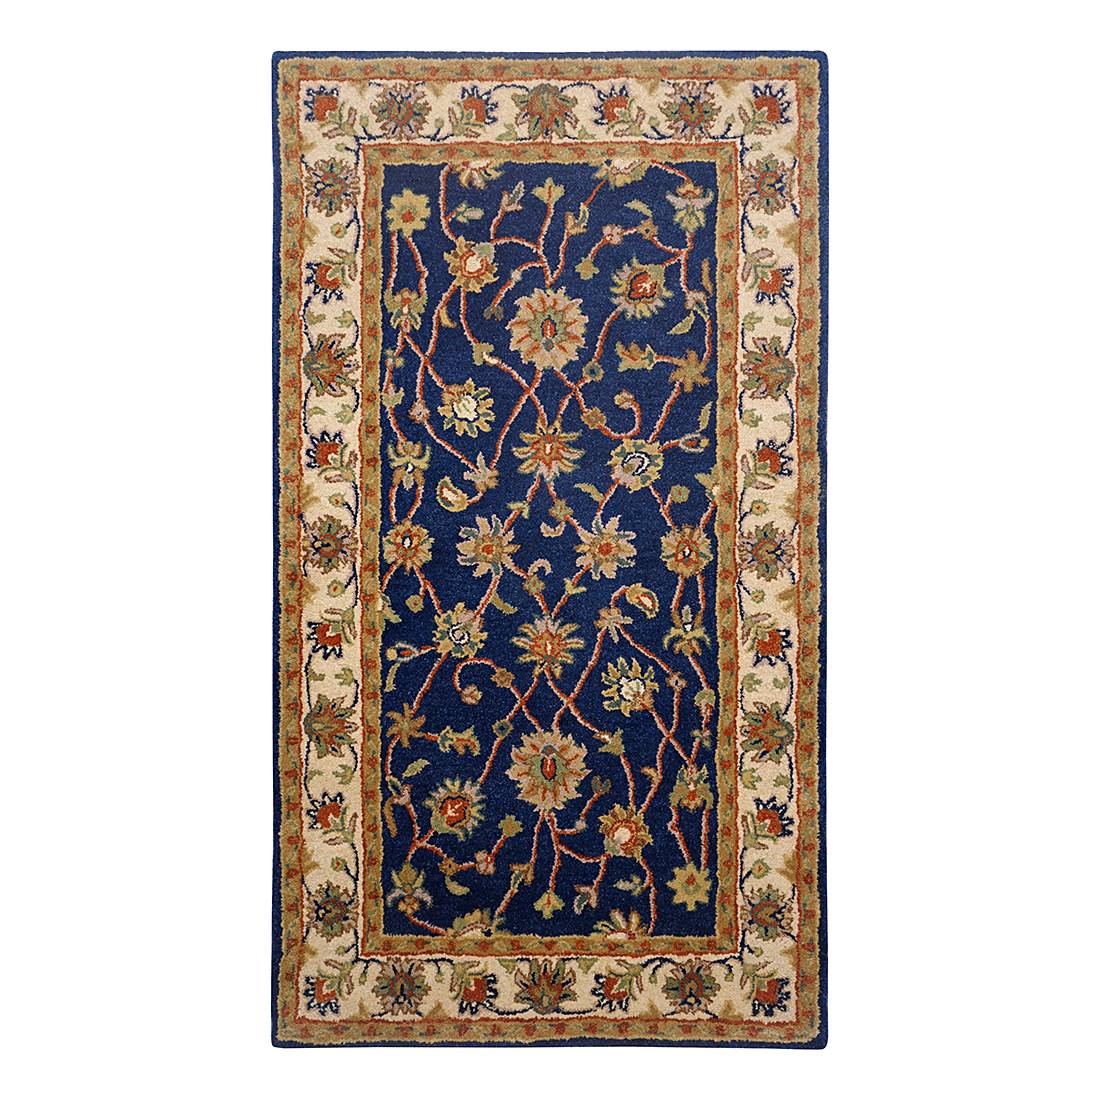 Teppich Royal Ziegler - Wolle/Blau - 60 cm x 90 cm, Theko die markenteppiche